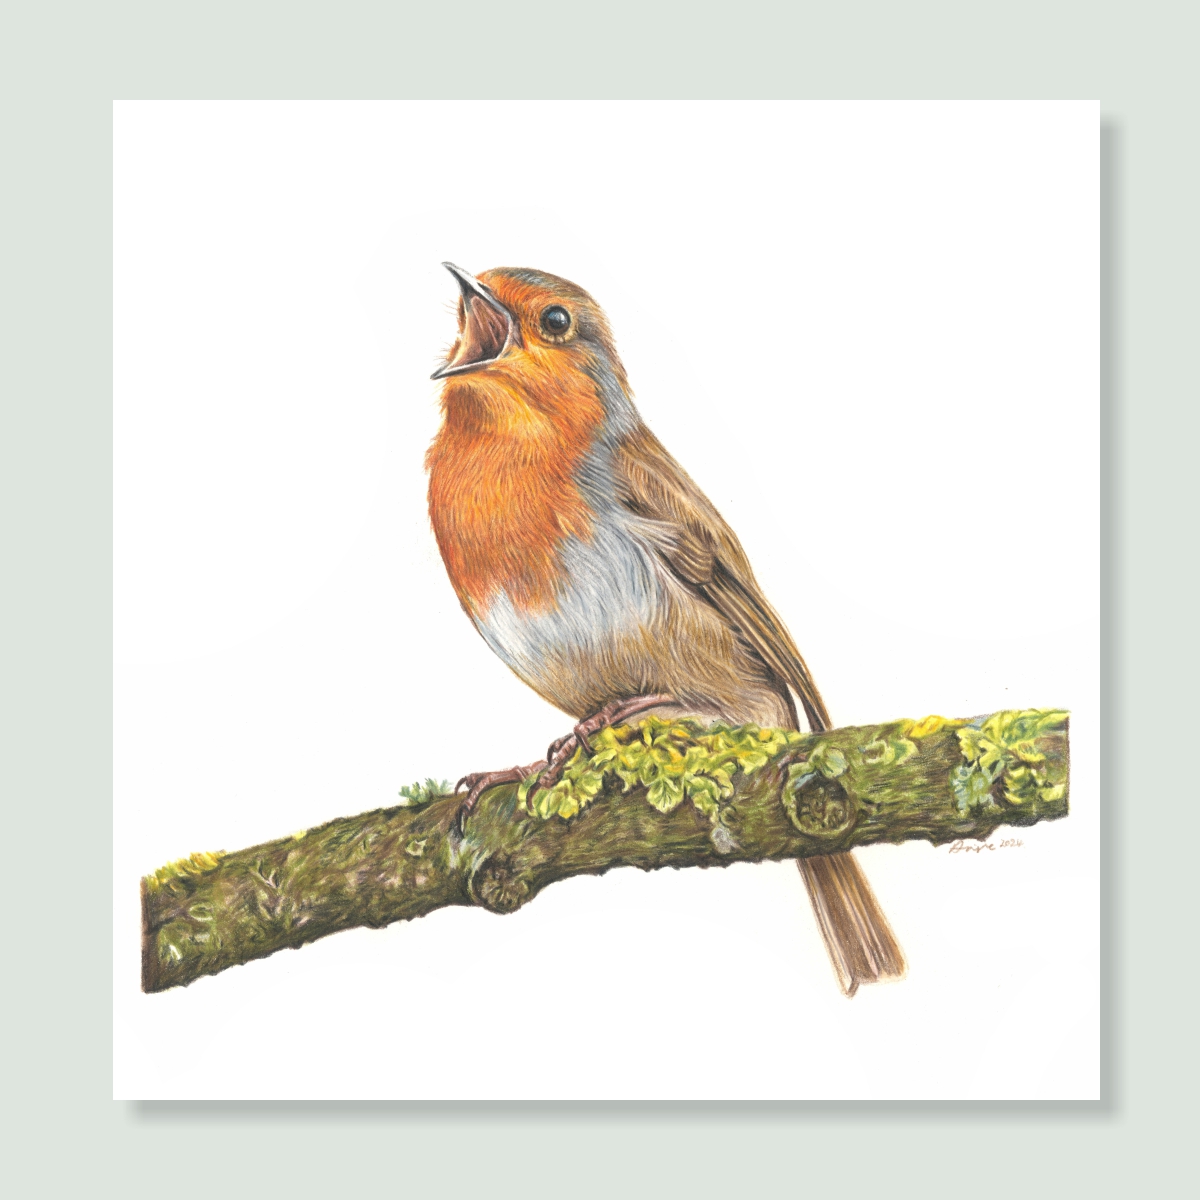 UK Garden Bird Collection - Robin study by wildlife artist Angie.